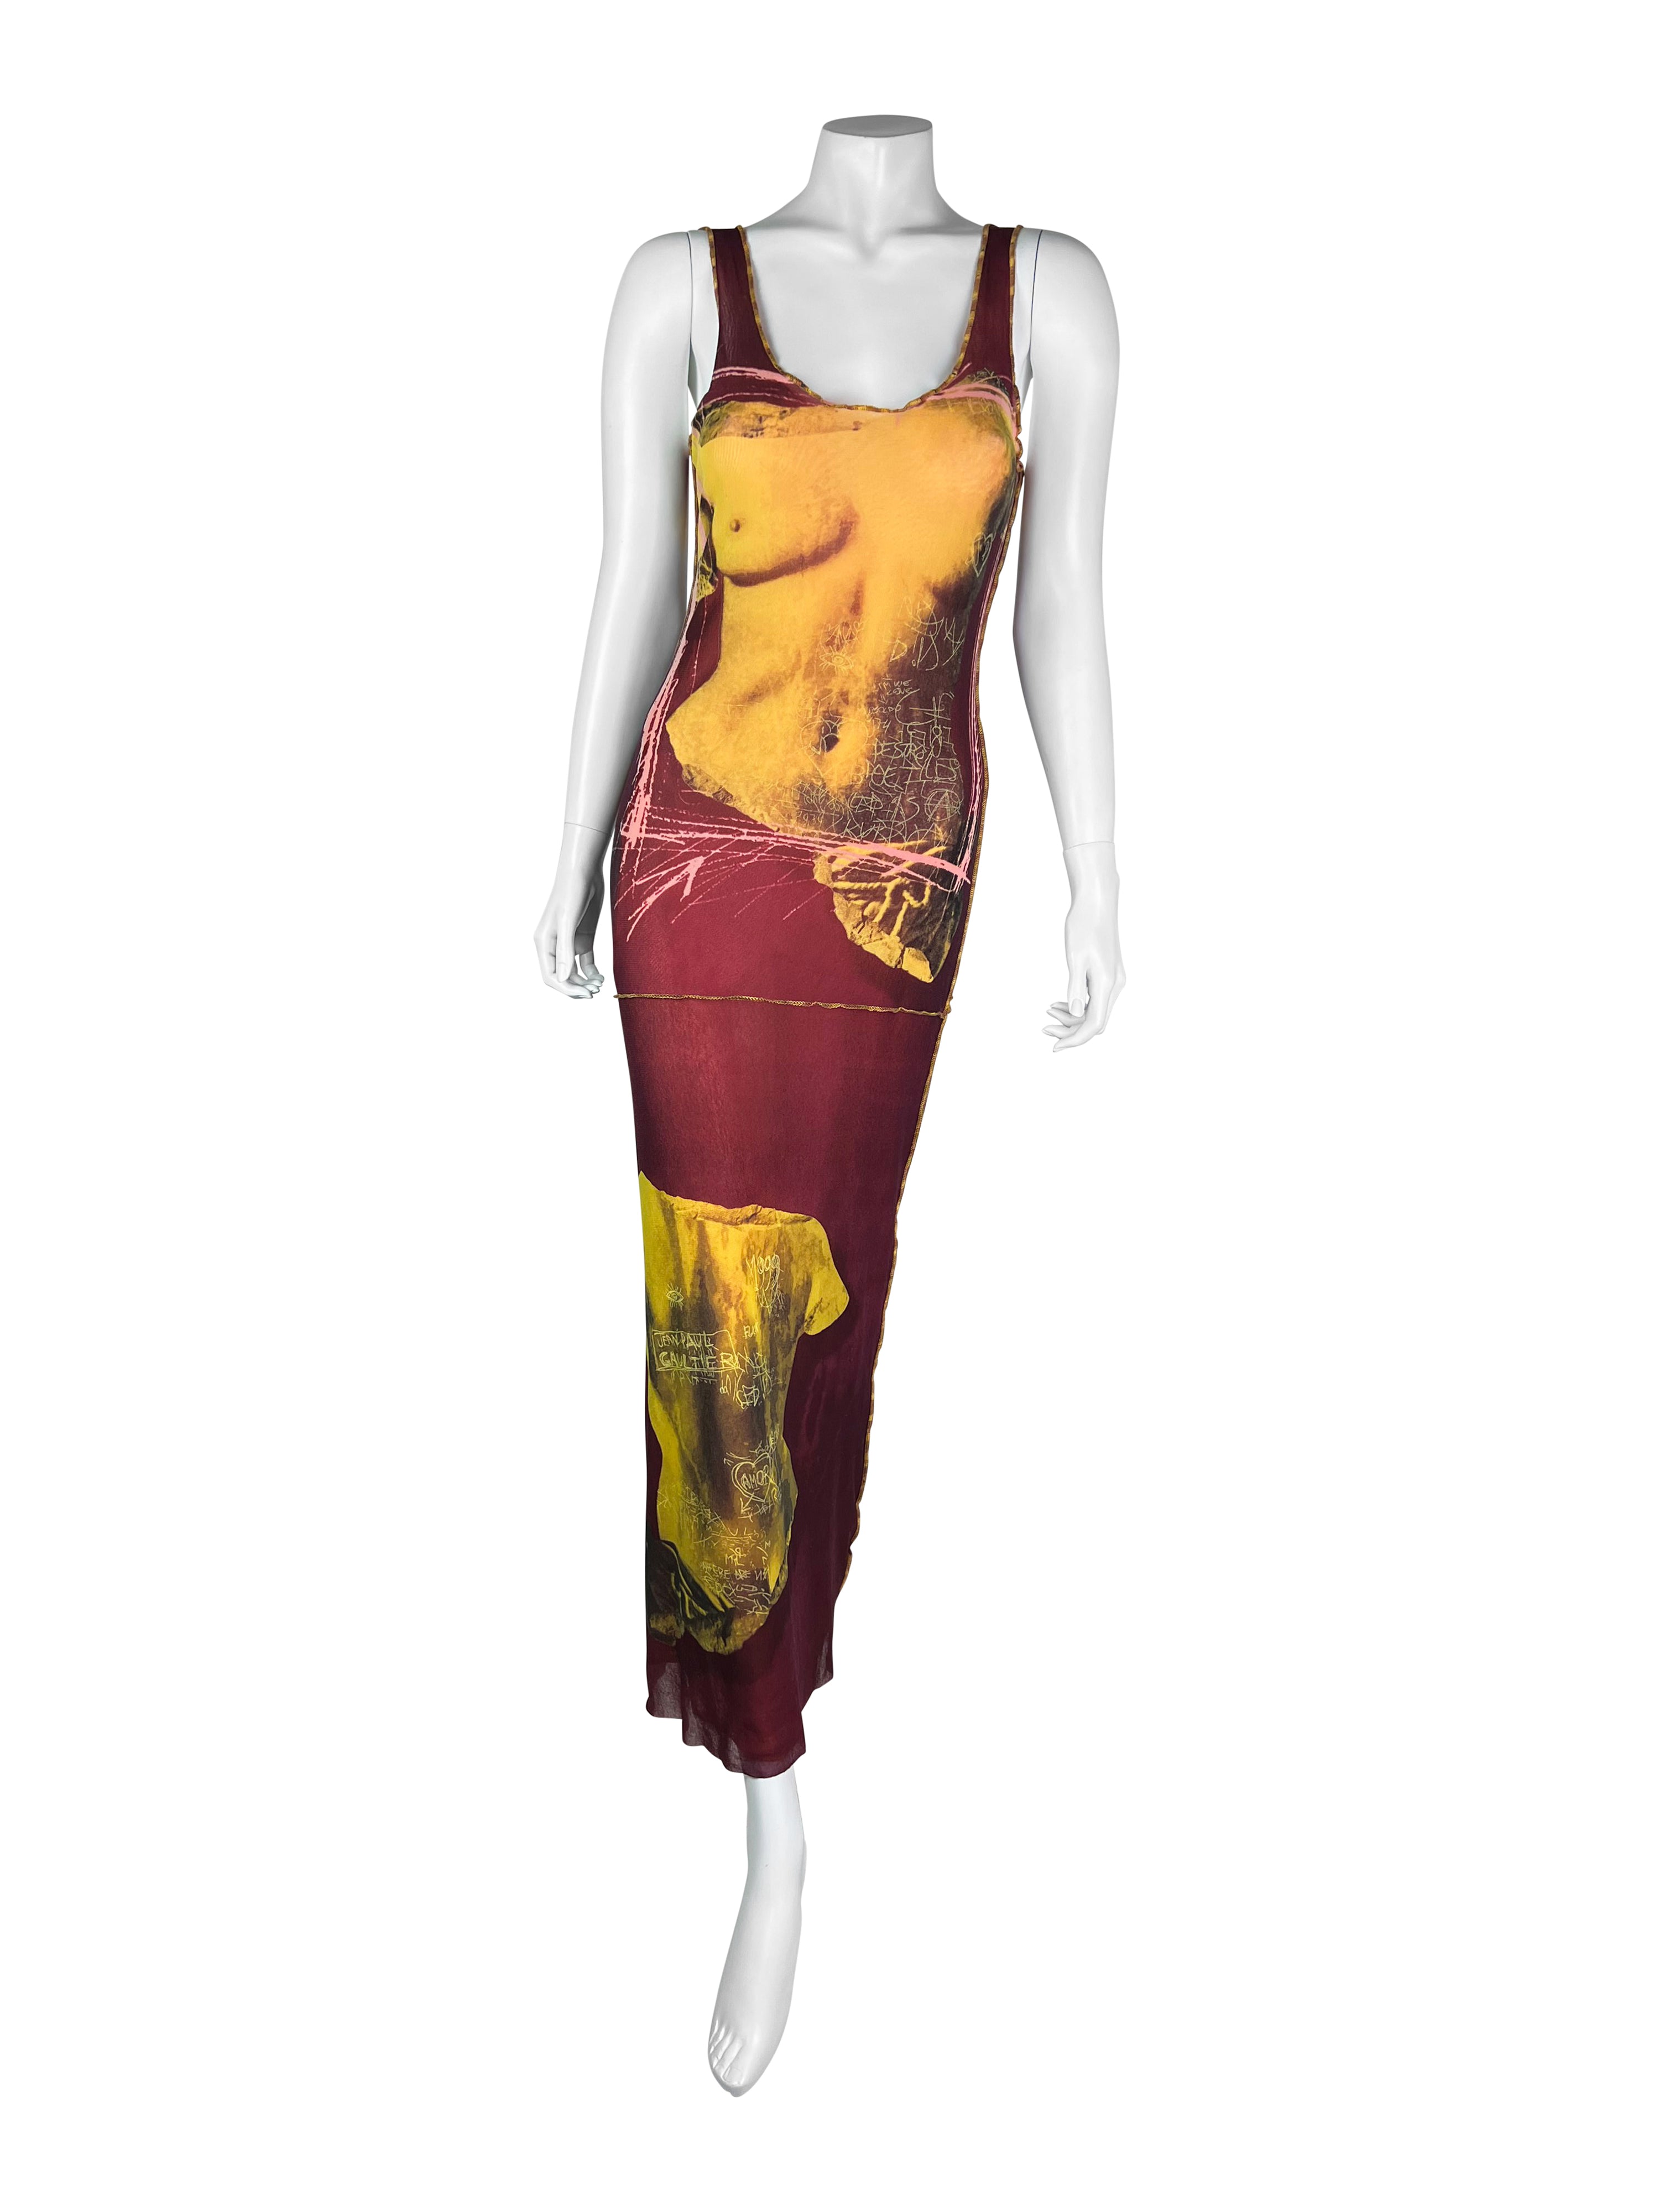 Jean-Paul Gaultier Spring 1999 Venus De Milo Mesh Dress – QV Archive